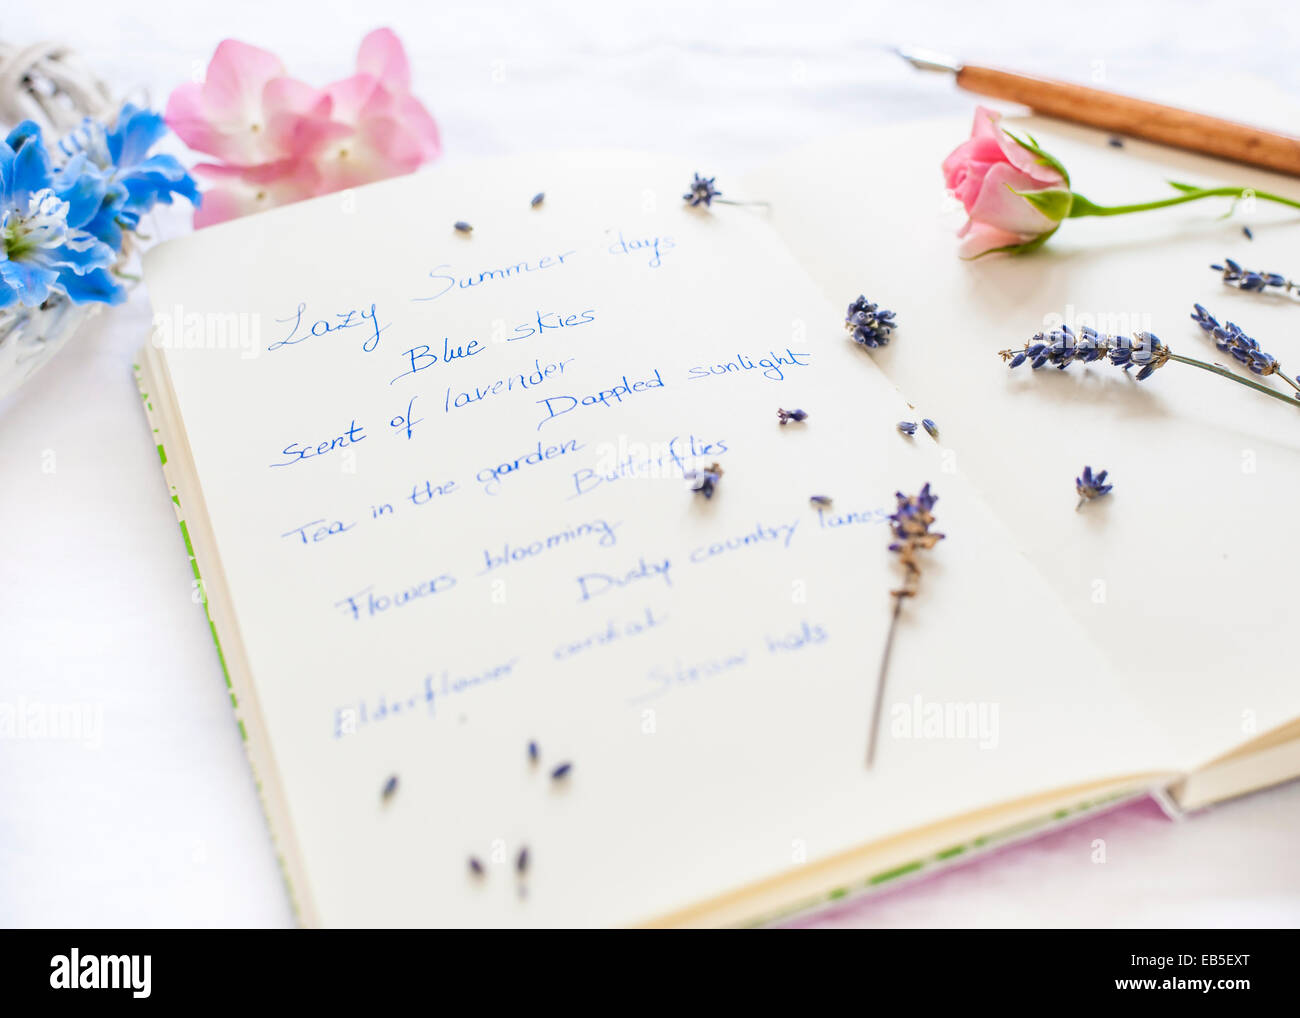 Bloc de notas con notas sobre el verano, pluma, lavanda, Delphinium, rosa rosa y hortensias - enfoque selectivo con desenfoque Foto de stock